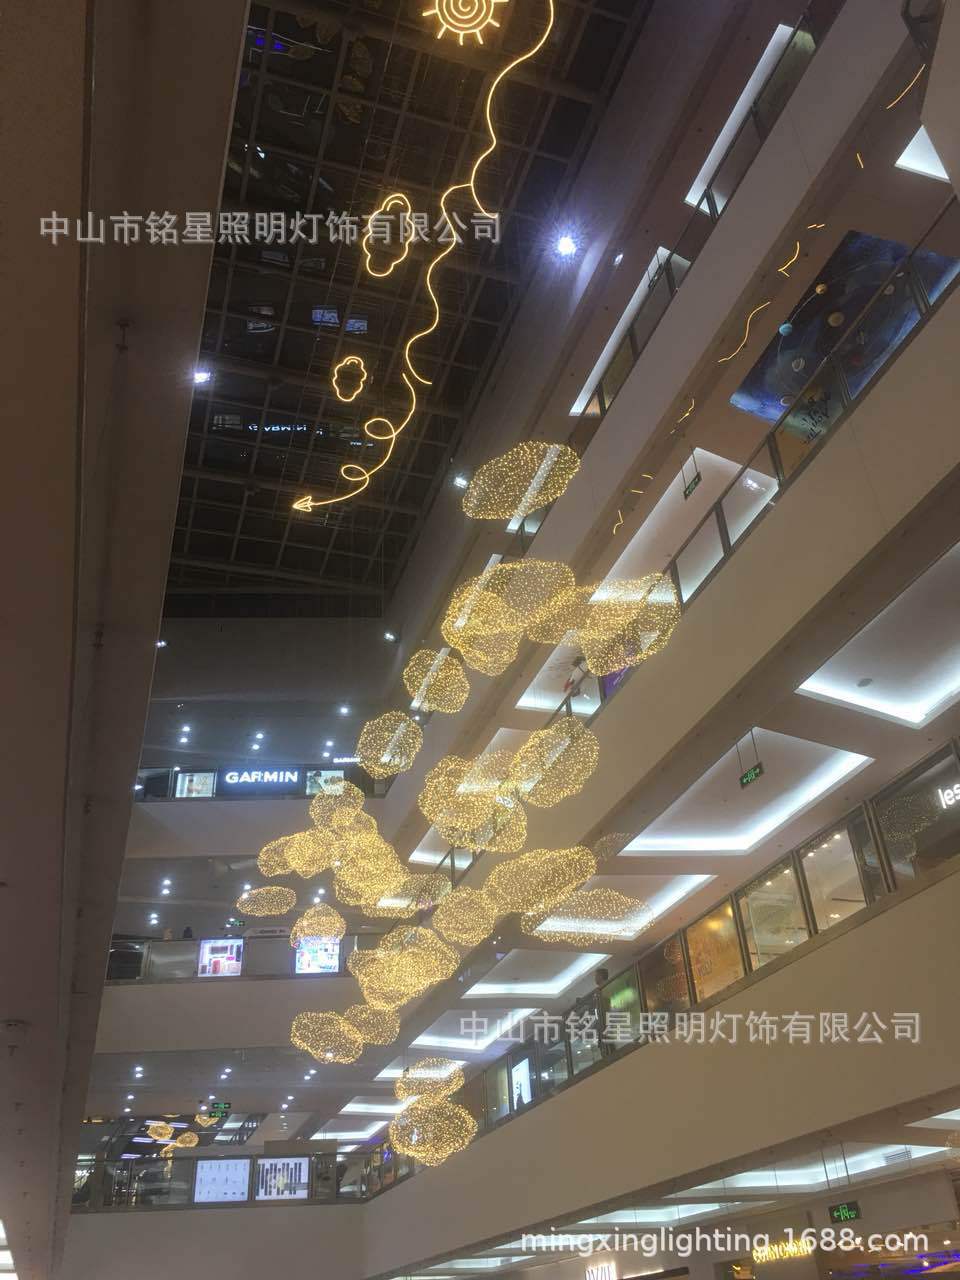 中国供应商铭星照明灯饰有限公司全新LED云朵满天星专业生产厂家示例图6